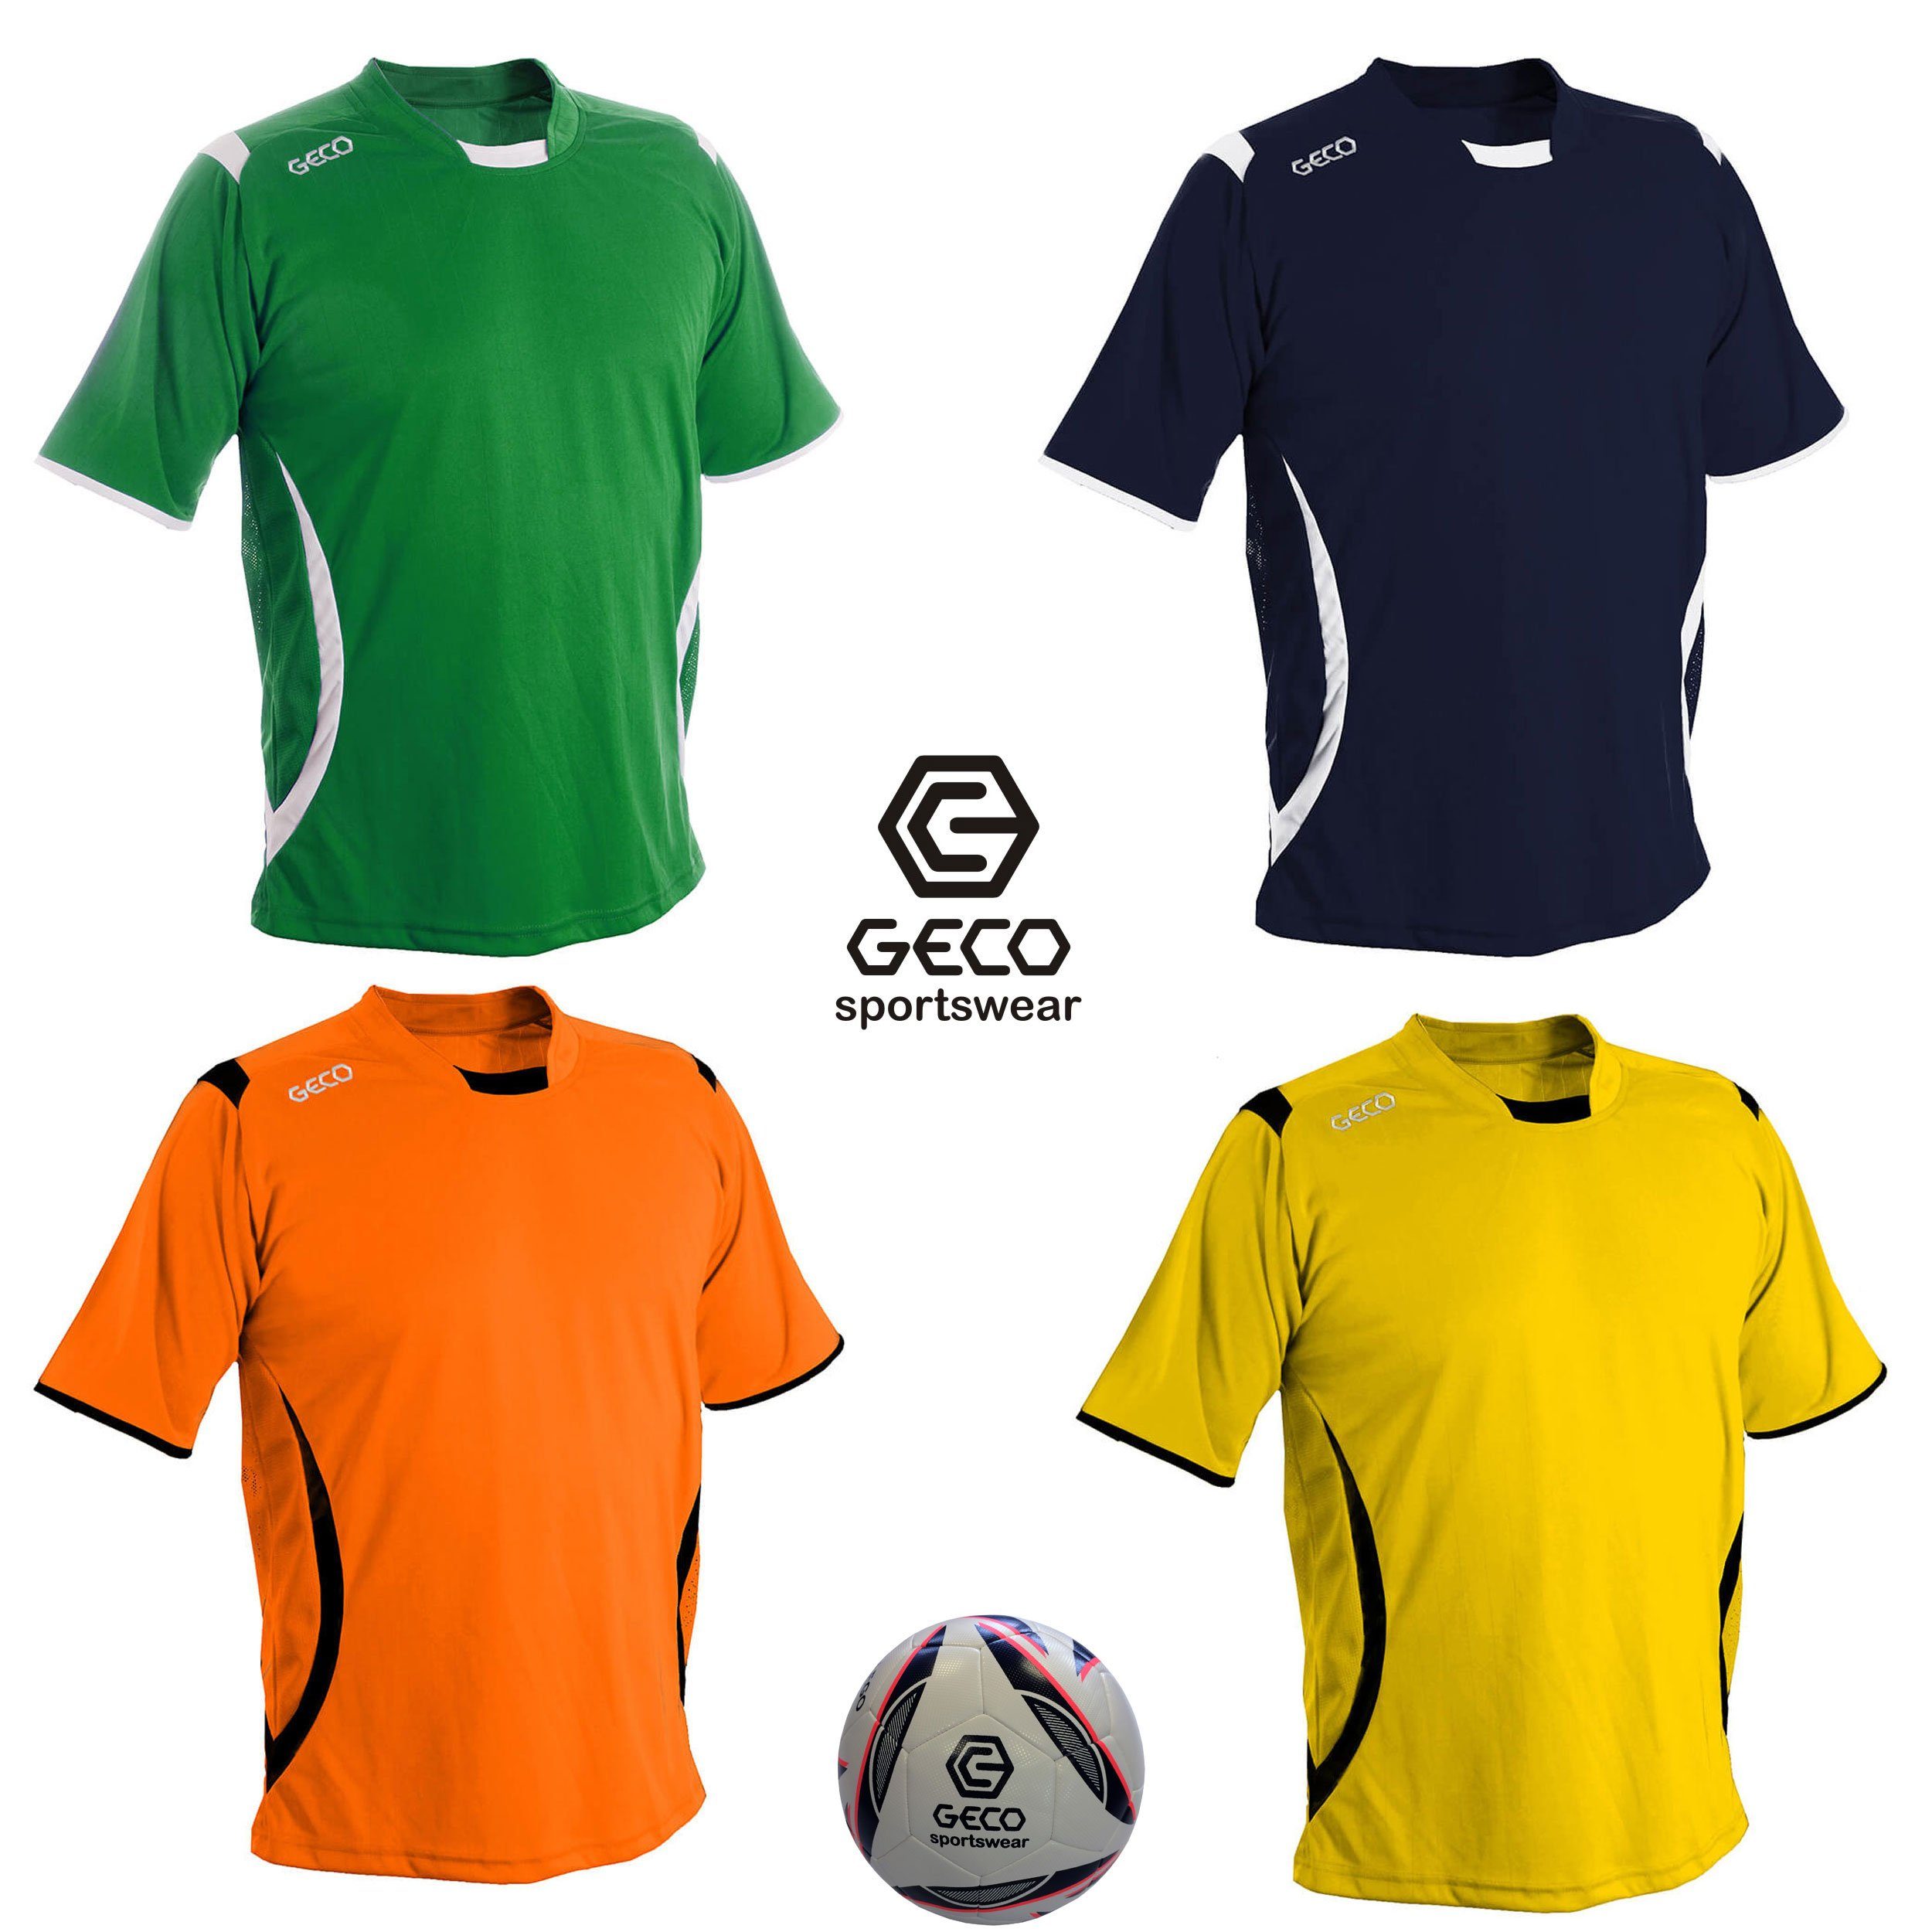 Geco Sportswear Fußballtrikot Fußballtrikot grün/weiß seitliche Mesh Fußball zweifarbig Einsätze Trikot Geco kurzarm Levante